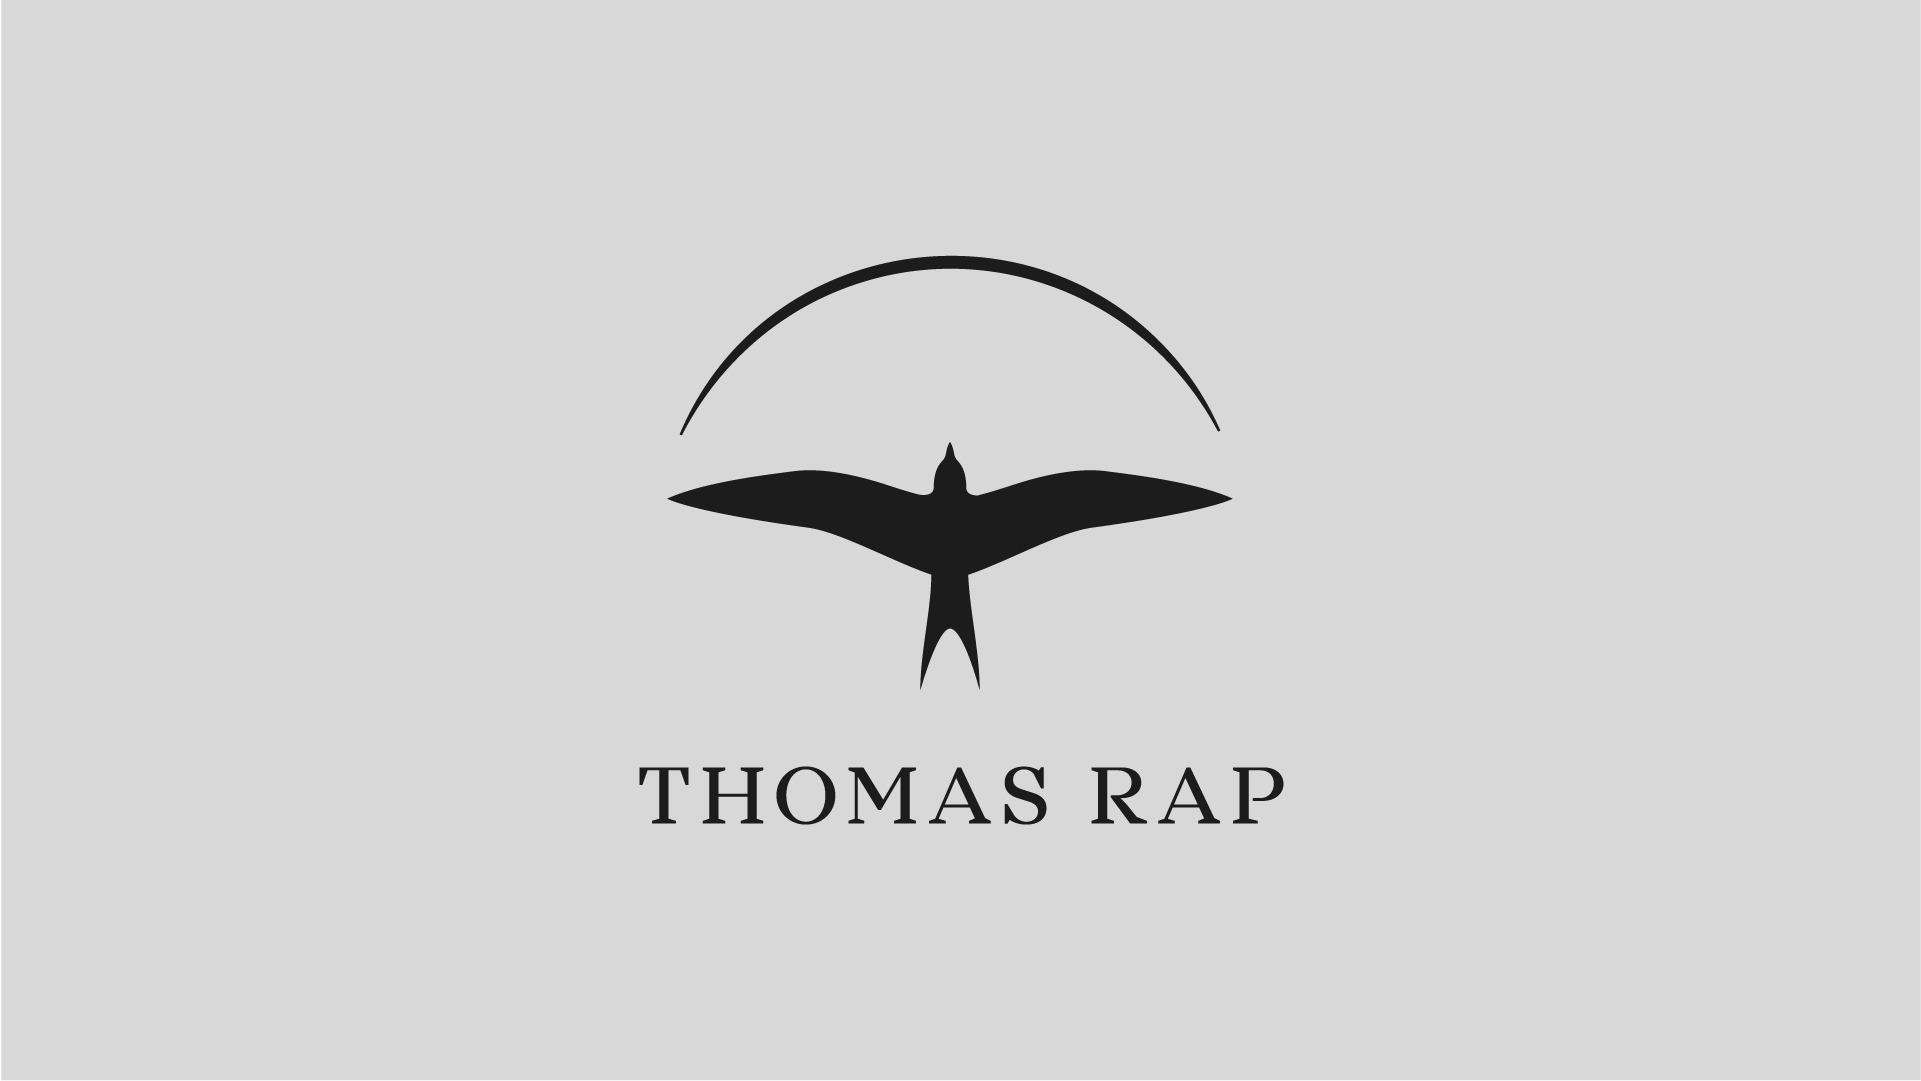 Thomas Rap